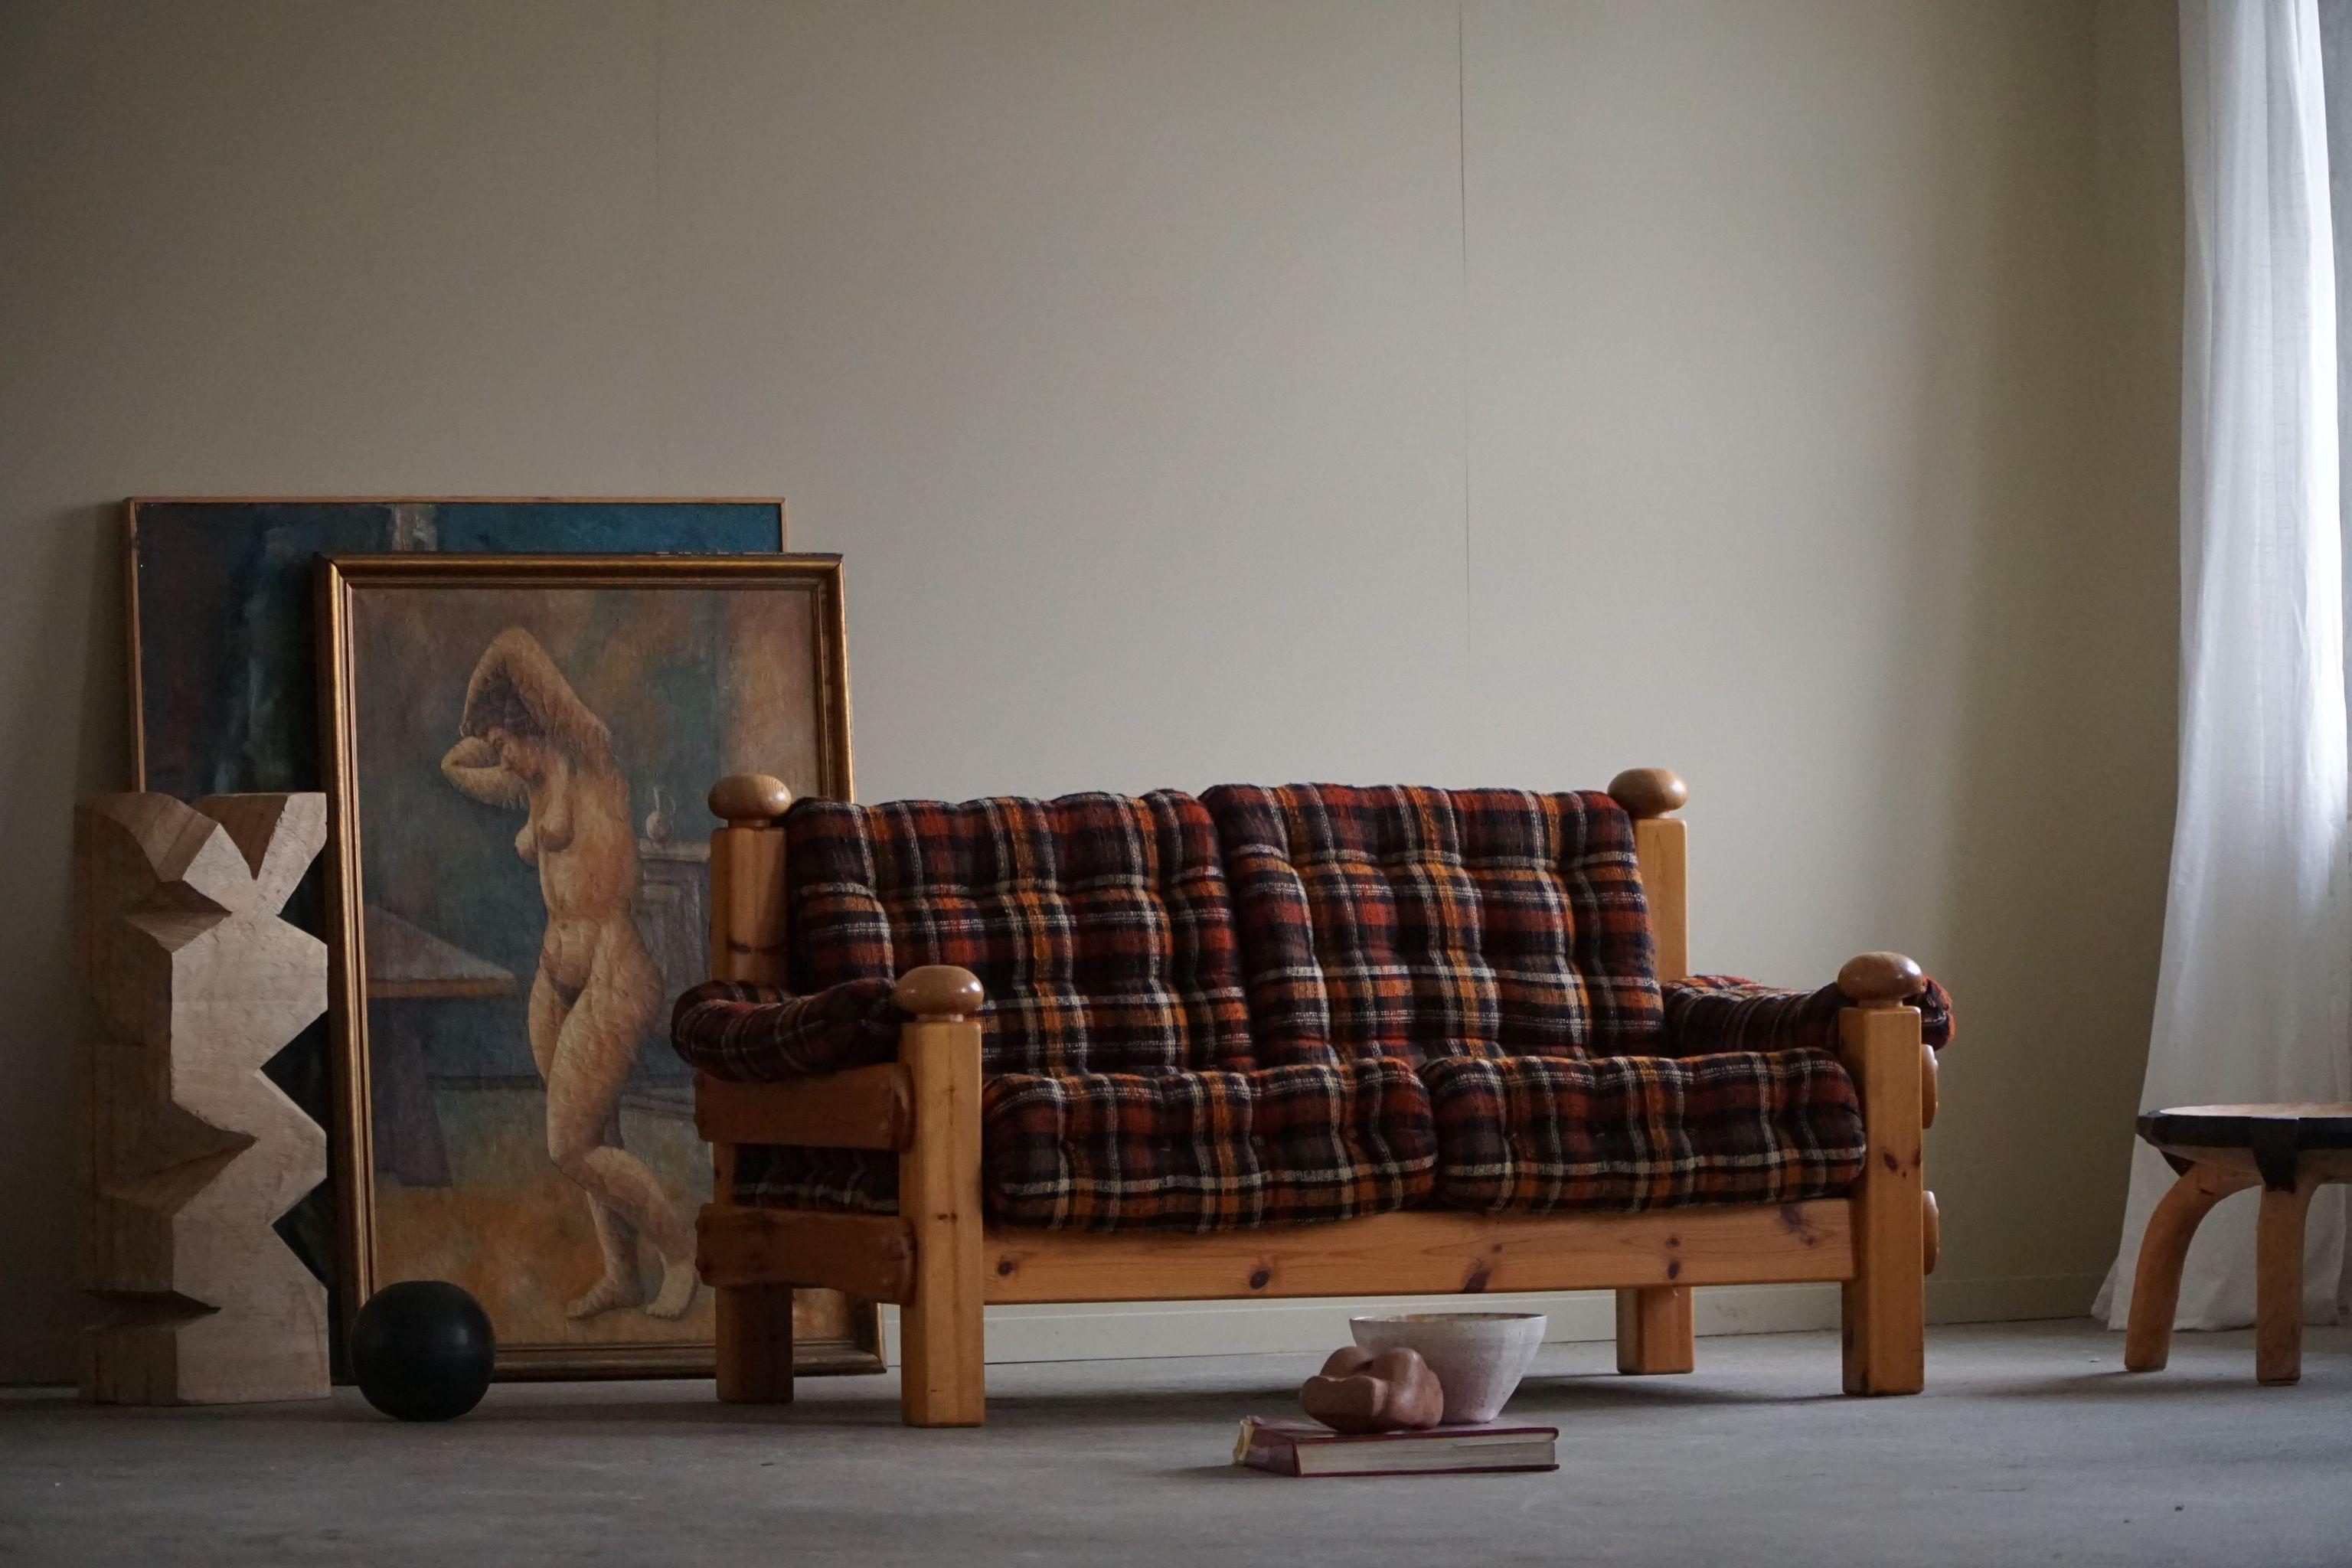 Un confortable canapé deux places, tapissé d'un tissu vintage. 
Attribué au designer suédois Sven Larsson. Fabriqué dans les années 1970.
Ce canapé solide s'harmonise avec de nombreux styles d'intérieur. Une décoration d'intérieur moderne,